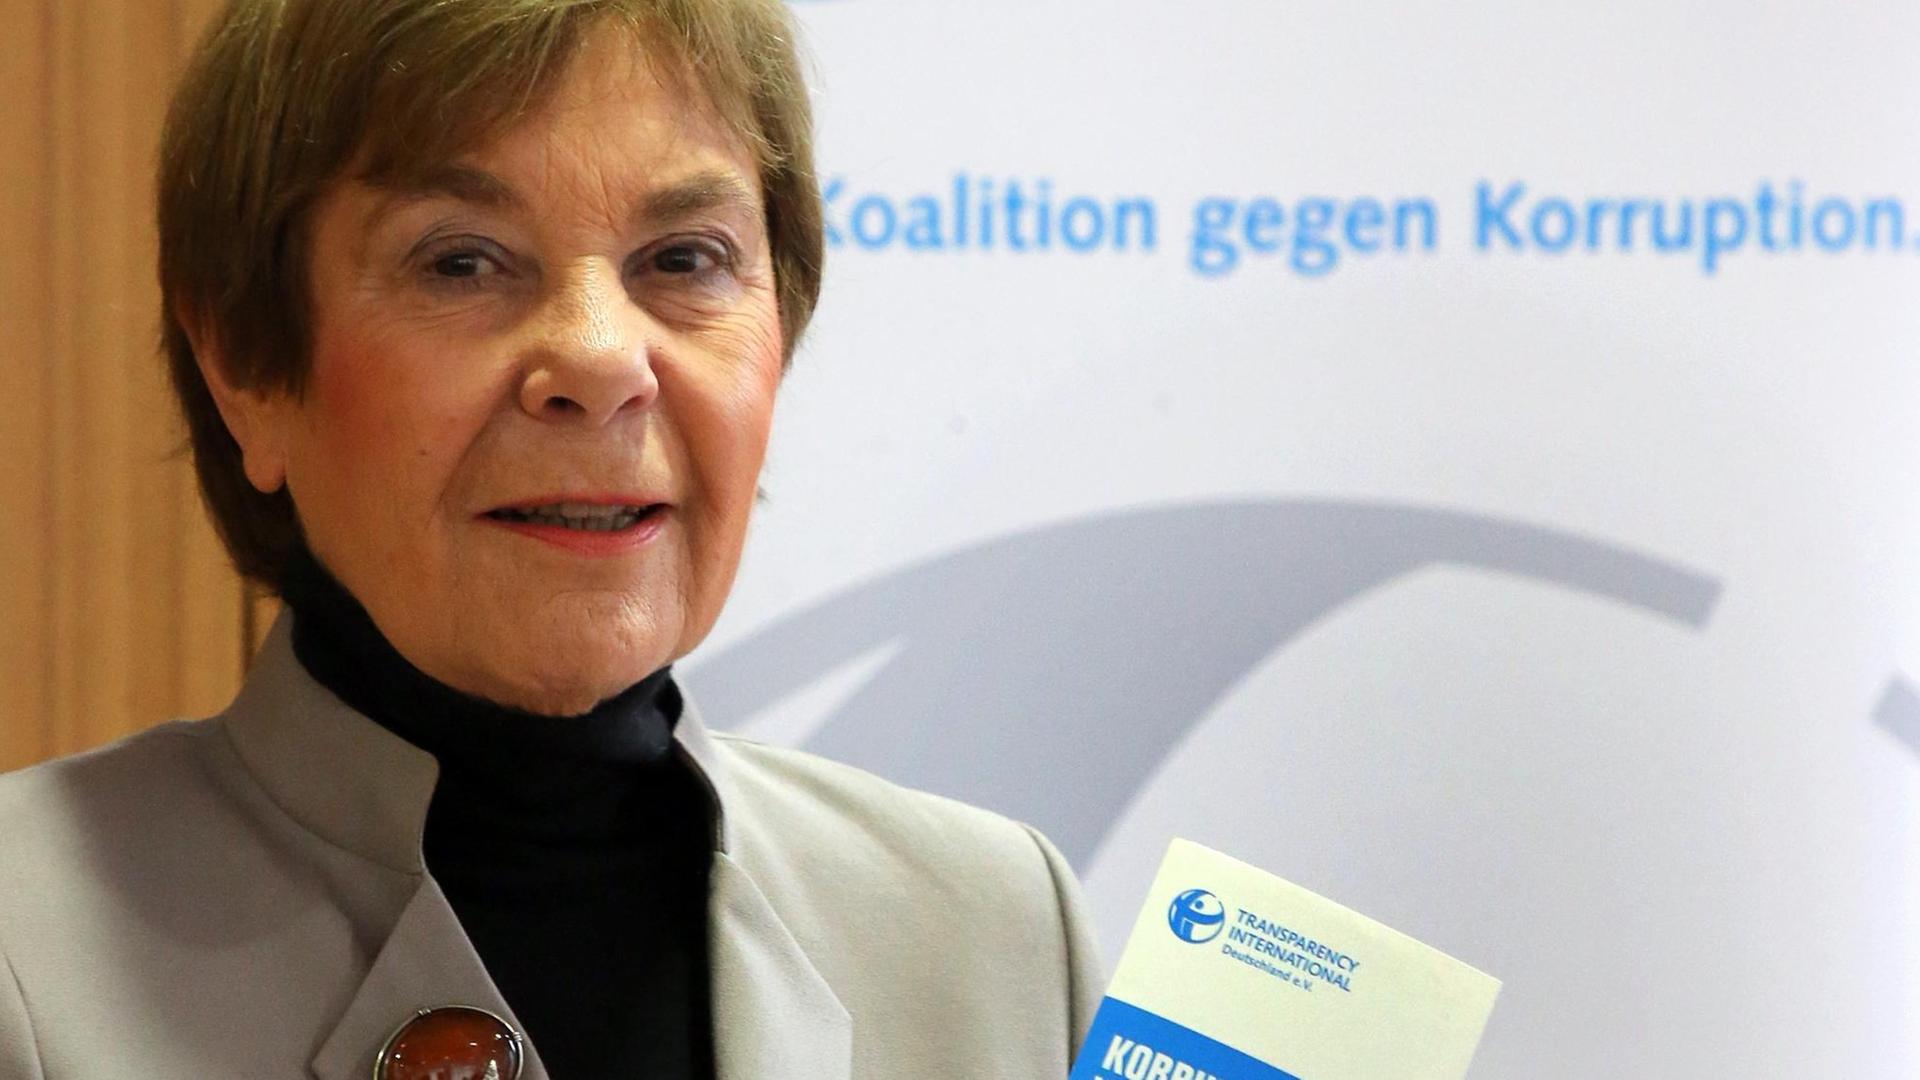 Edda Müller, Vorsitzenden von Transparency International Deutschland, hält eine Broschüre über den Korruptionswahrnehmungsindexes CPI 2018 in der Hand